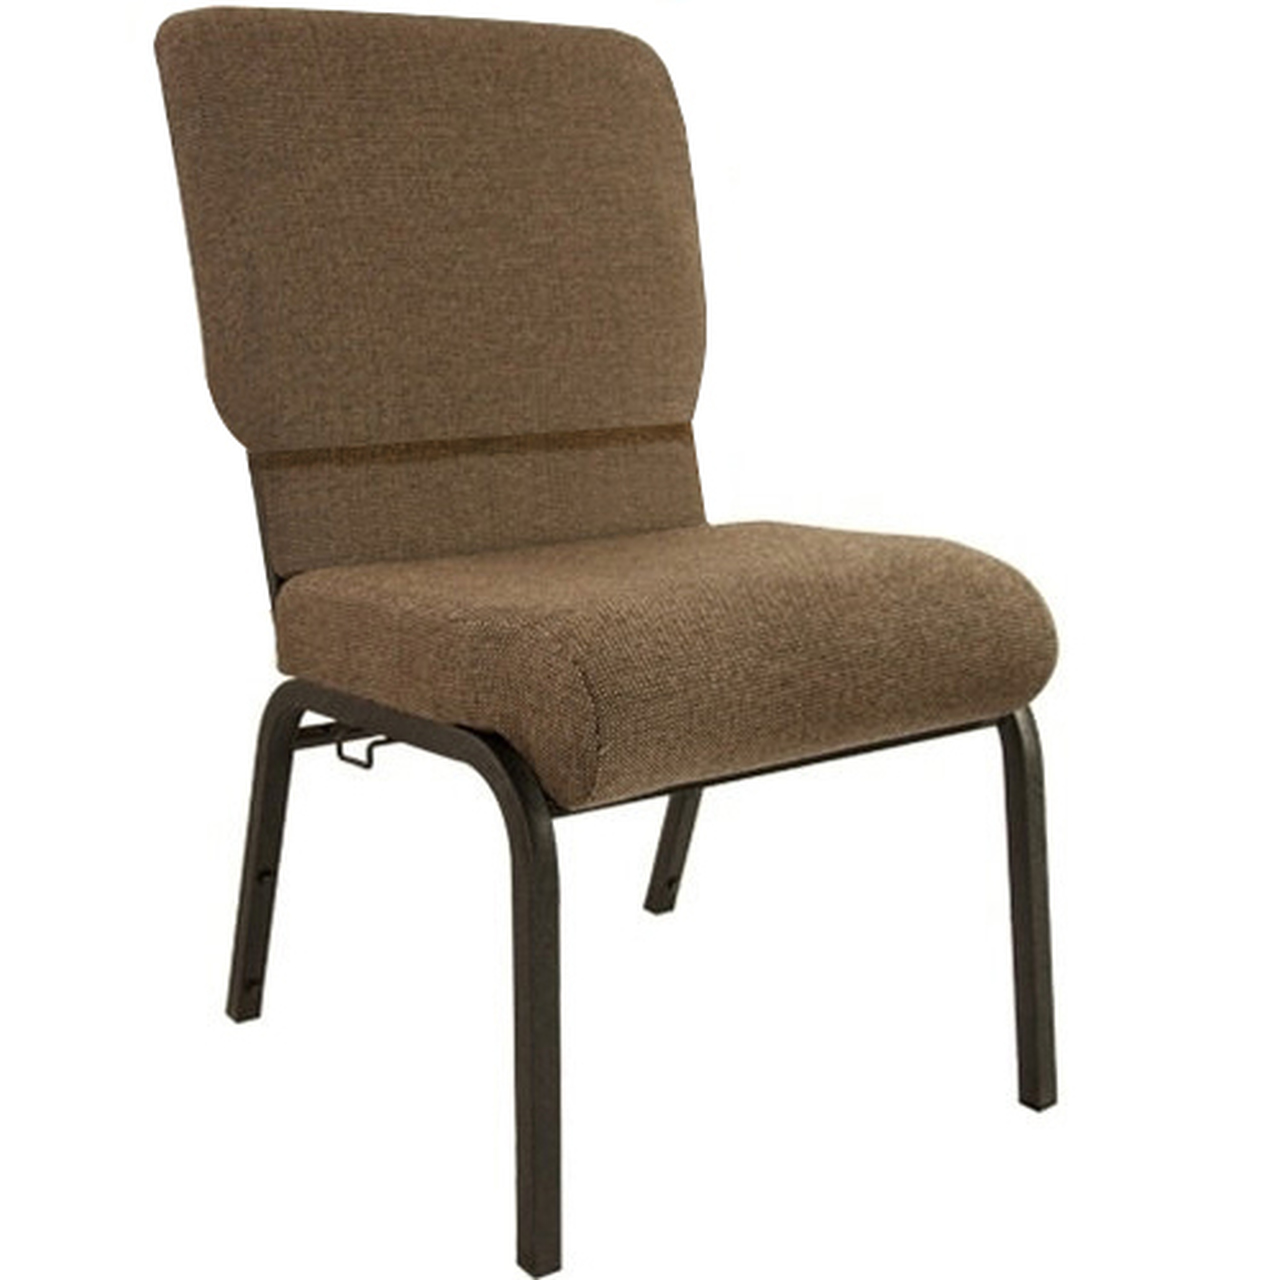 PCHT-112 Advantage Church Chair